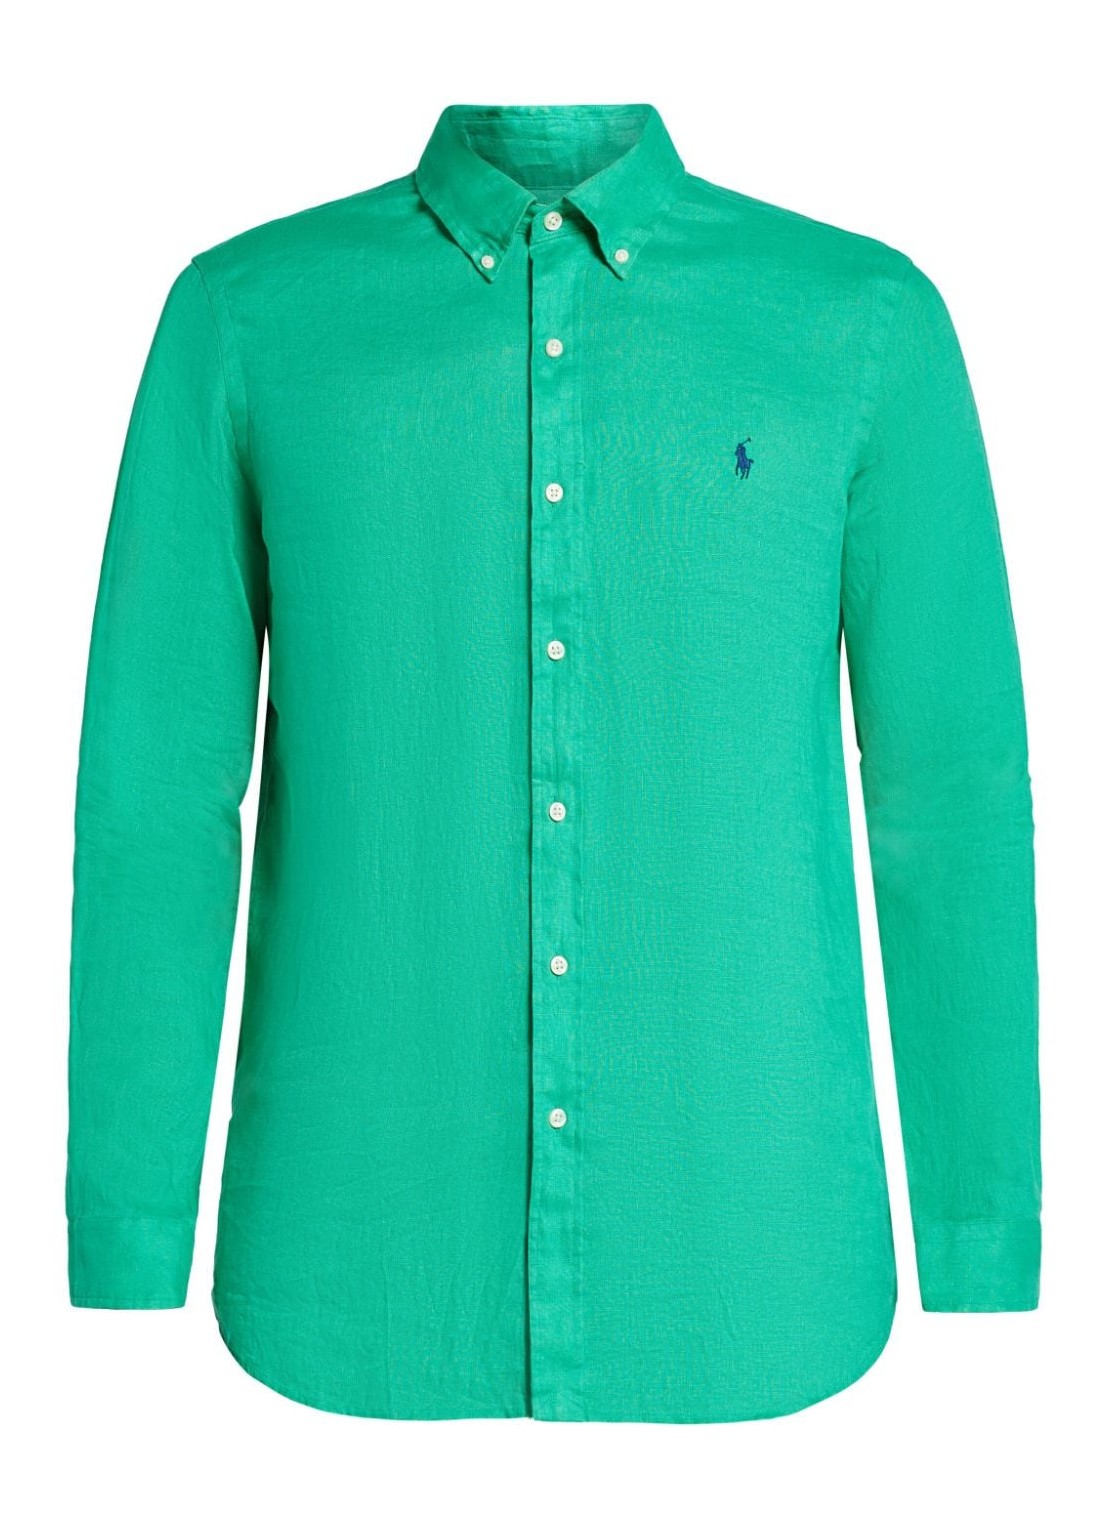 Camiseria polo ralph lauren shirt man cubdppcs-long sleeve-sport shirt 710794141021 grasshopper gree